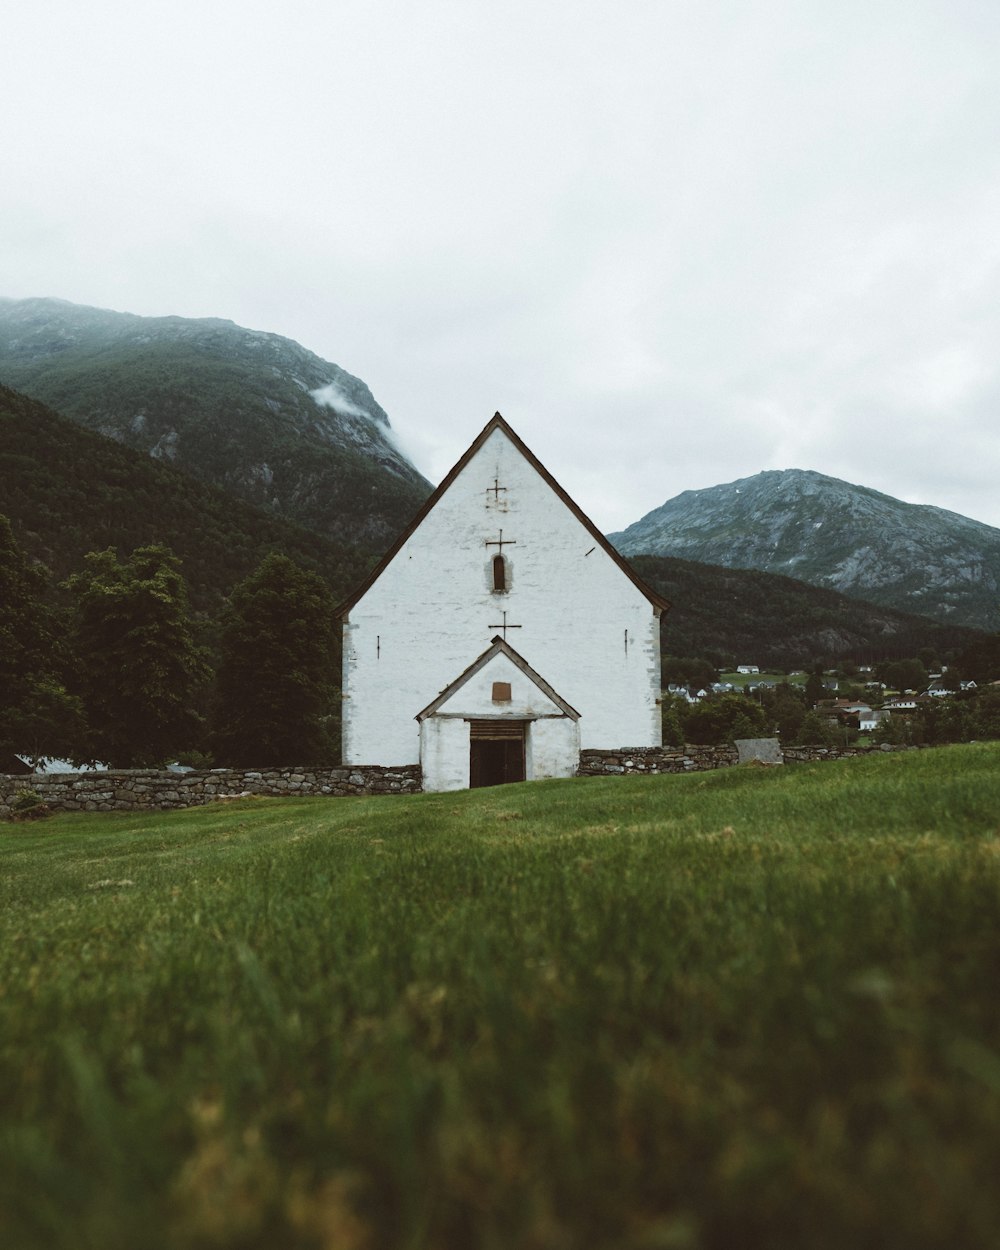 Chiesa in cemento bianco vicino alle cime delle montagne